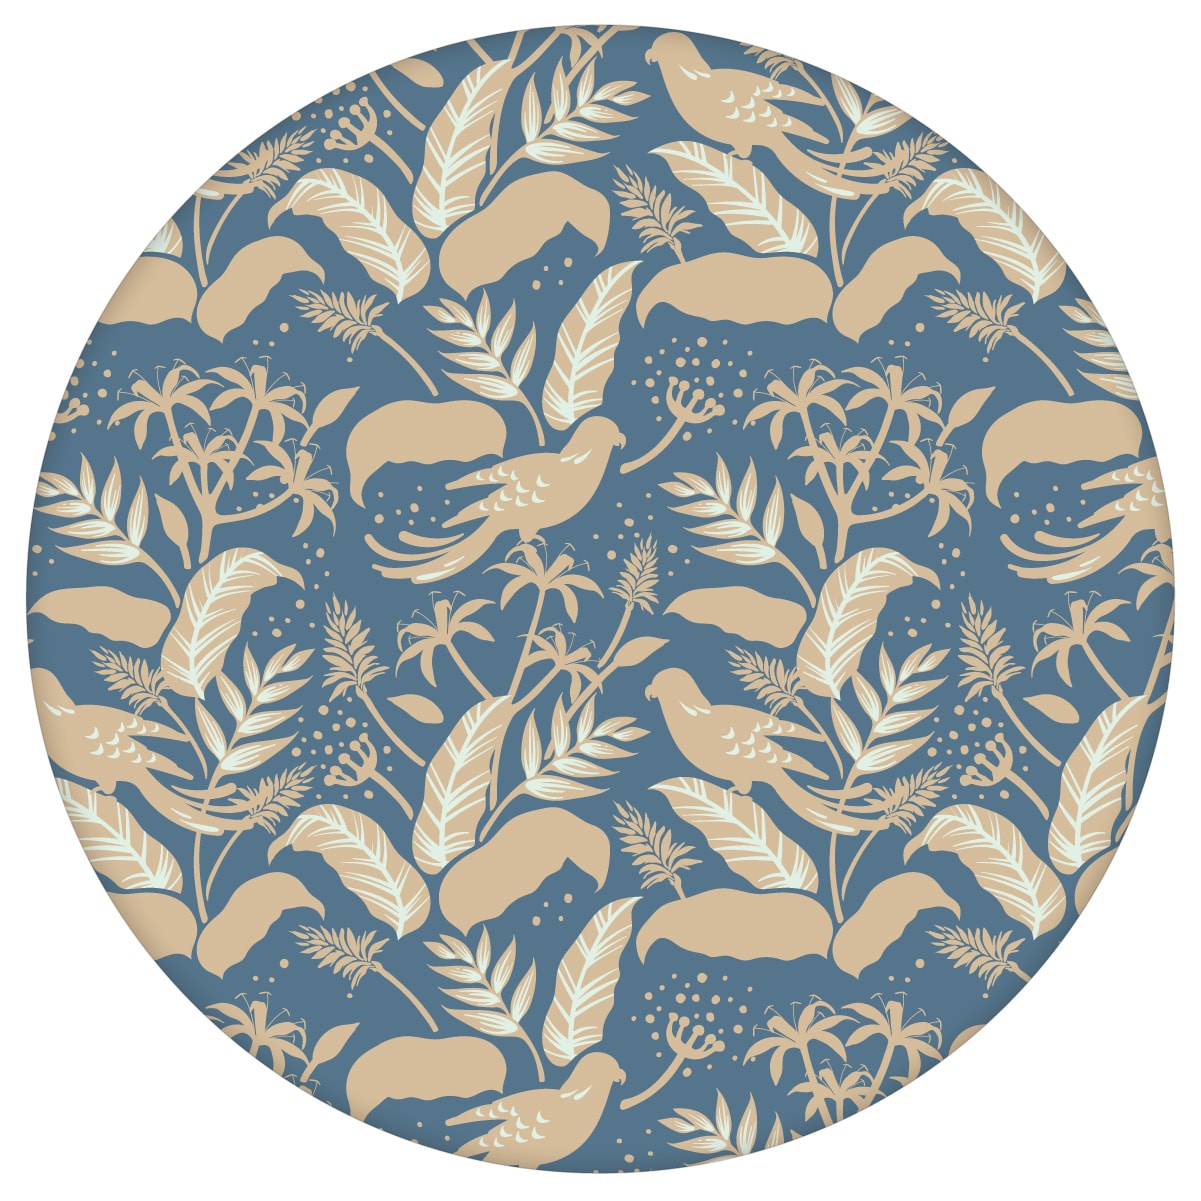 Blau beige Dschungel Tapete "Wild Birds" mit Vögeln, Vlies Tapete Blumen Tiere, schöne Blumentapete für Flur, Büroaus dem GMM-BERLIN.com Sortiment: blaue Tapete zur Raumgestaltung: #00175 #Arbeitszimmer #beige #beige – cremefarbene Tapeten #Blätter #blau #Blaue Tapeten #dschungel #Papagei #Tier Tapete #tiere #tropisch #voegel für individuelles Interiordesign